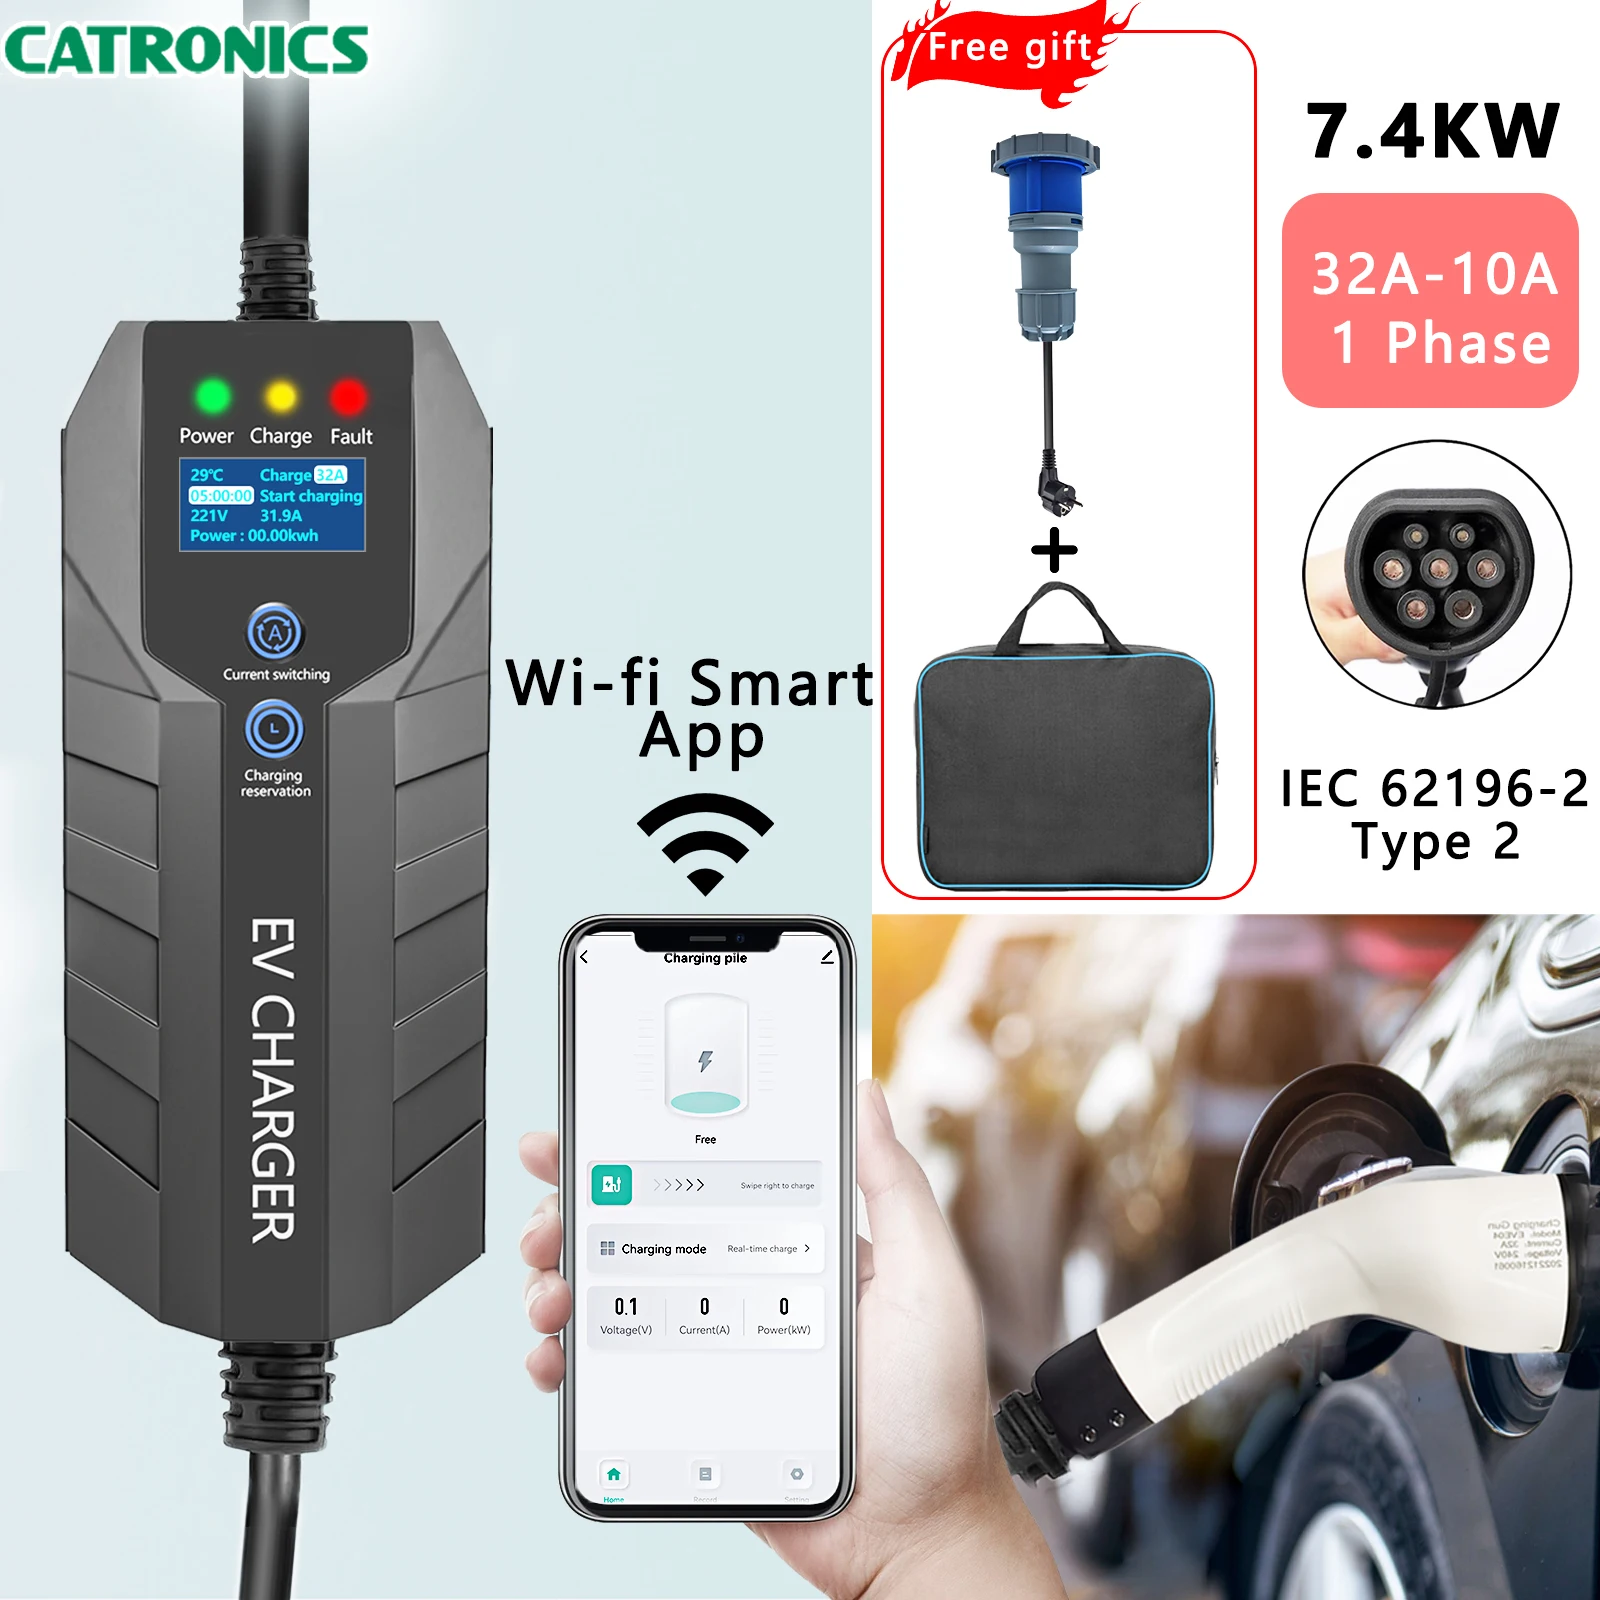 

Портативное электрическое зарядное устройство для электромобилей CATRONICS, тип 2 7 кВт, 32 А, 1-фазная Регулировка тока и задержка зарядки, 5 м, вилка CEE, Wi-Fi, умное приложение